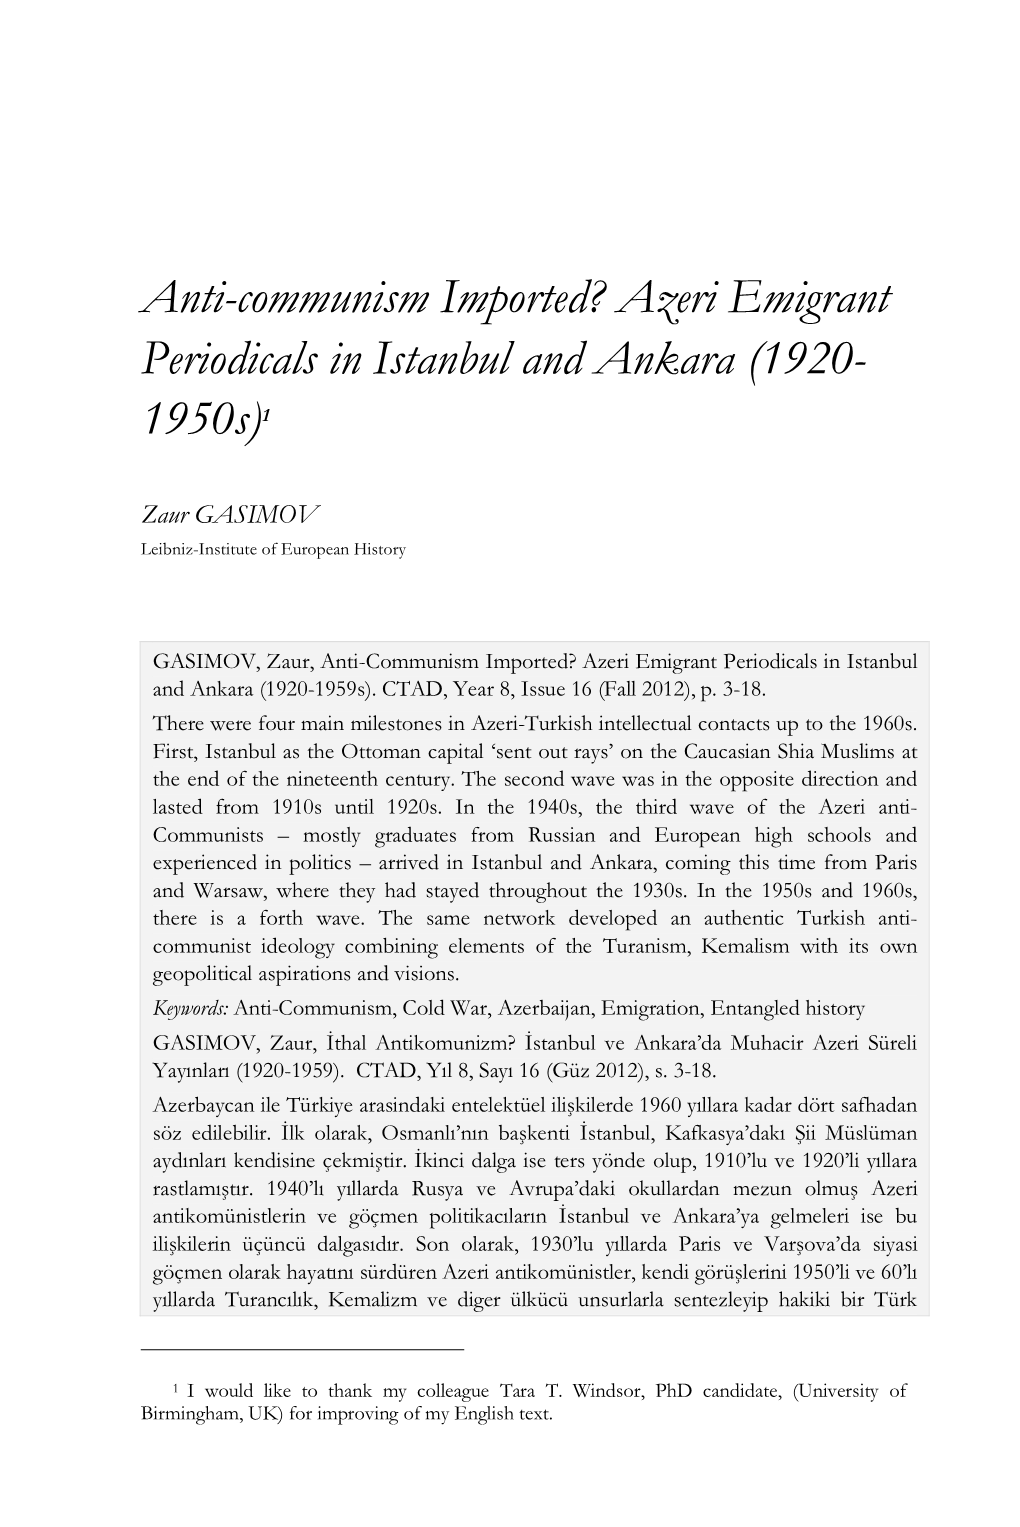 Anti-Communism Imported? Azeri Emigrant Periodicals in Istanbul and Ankara (1920- 1950S)1